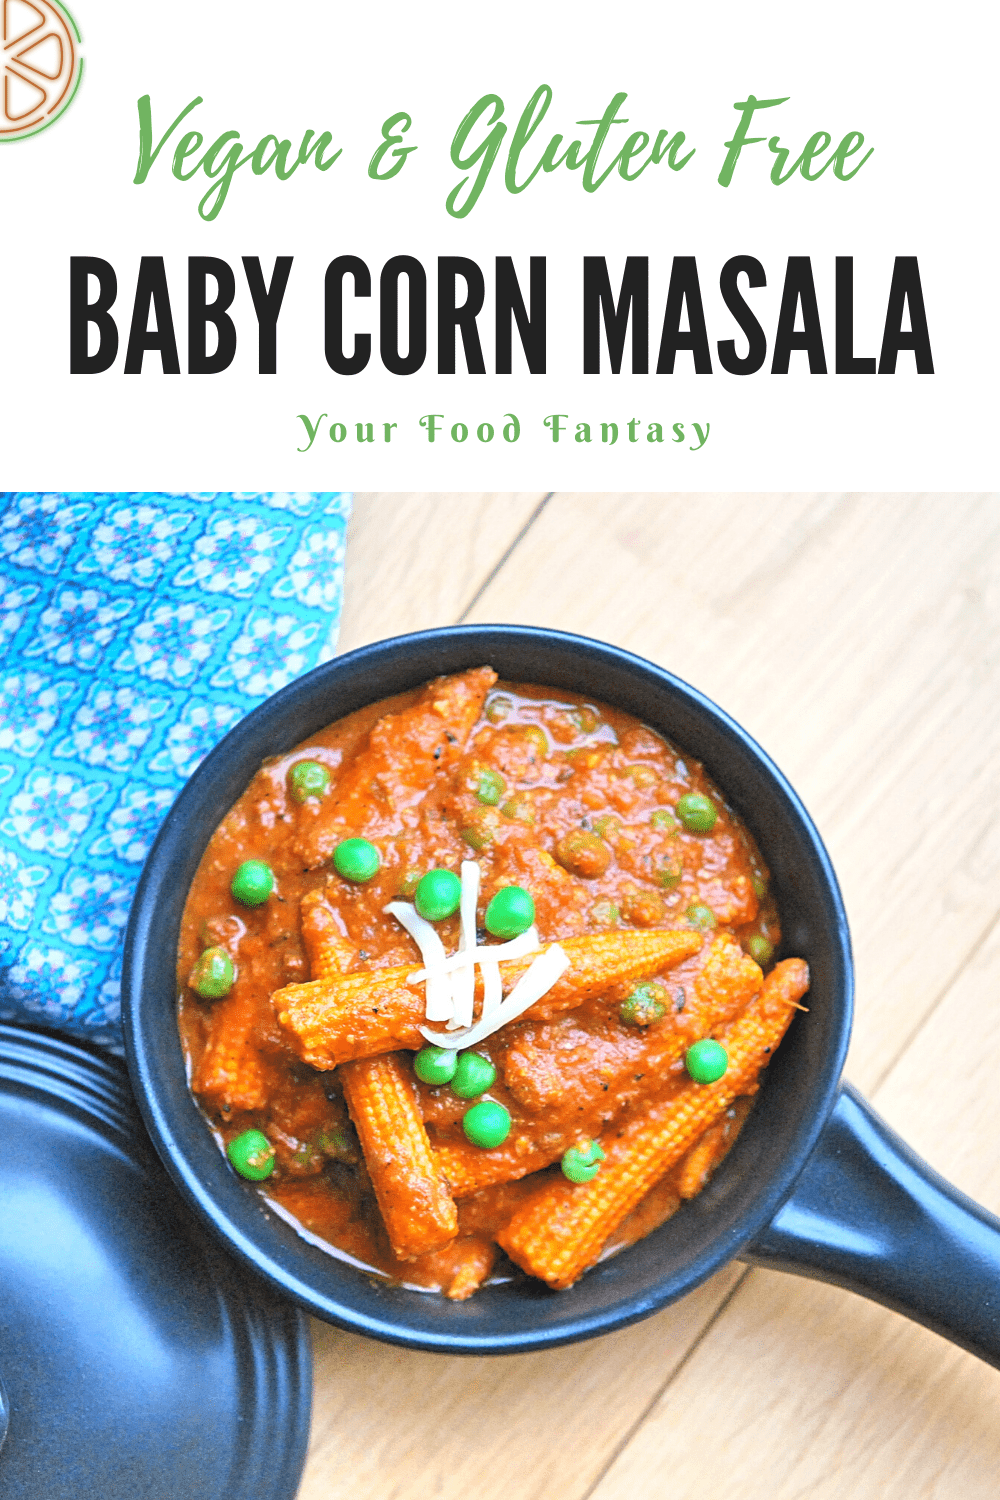 Baby Corn Masala Recipe - Your Food Fantasy